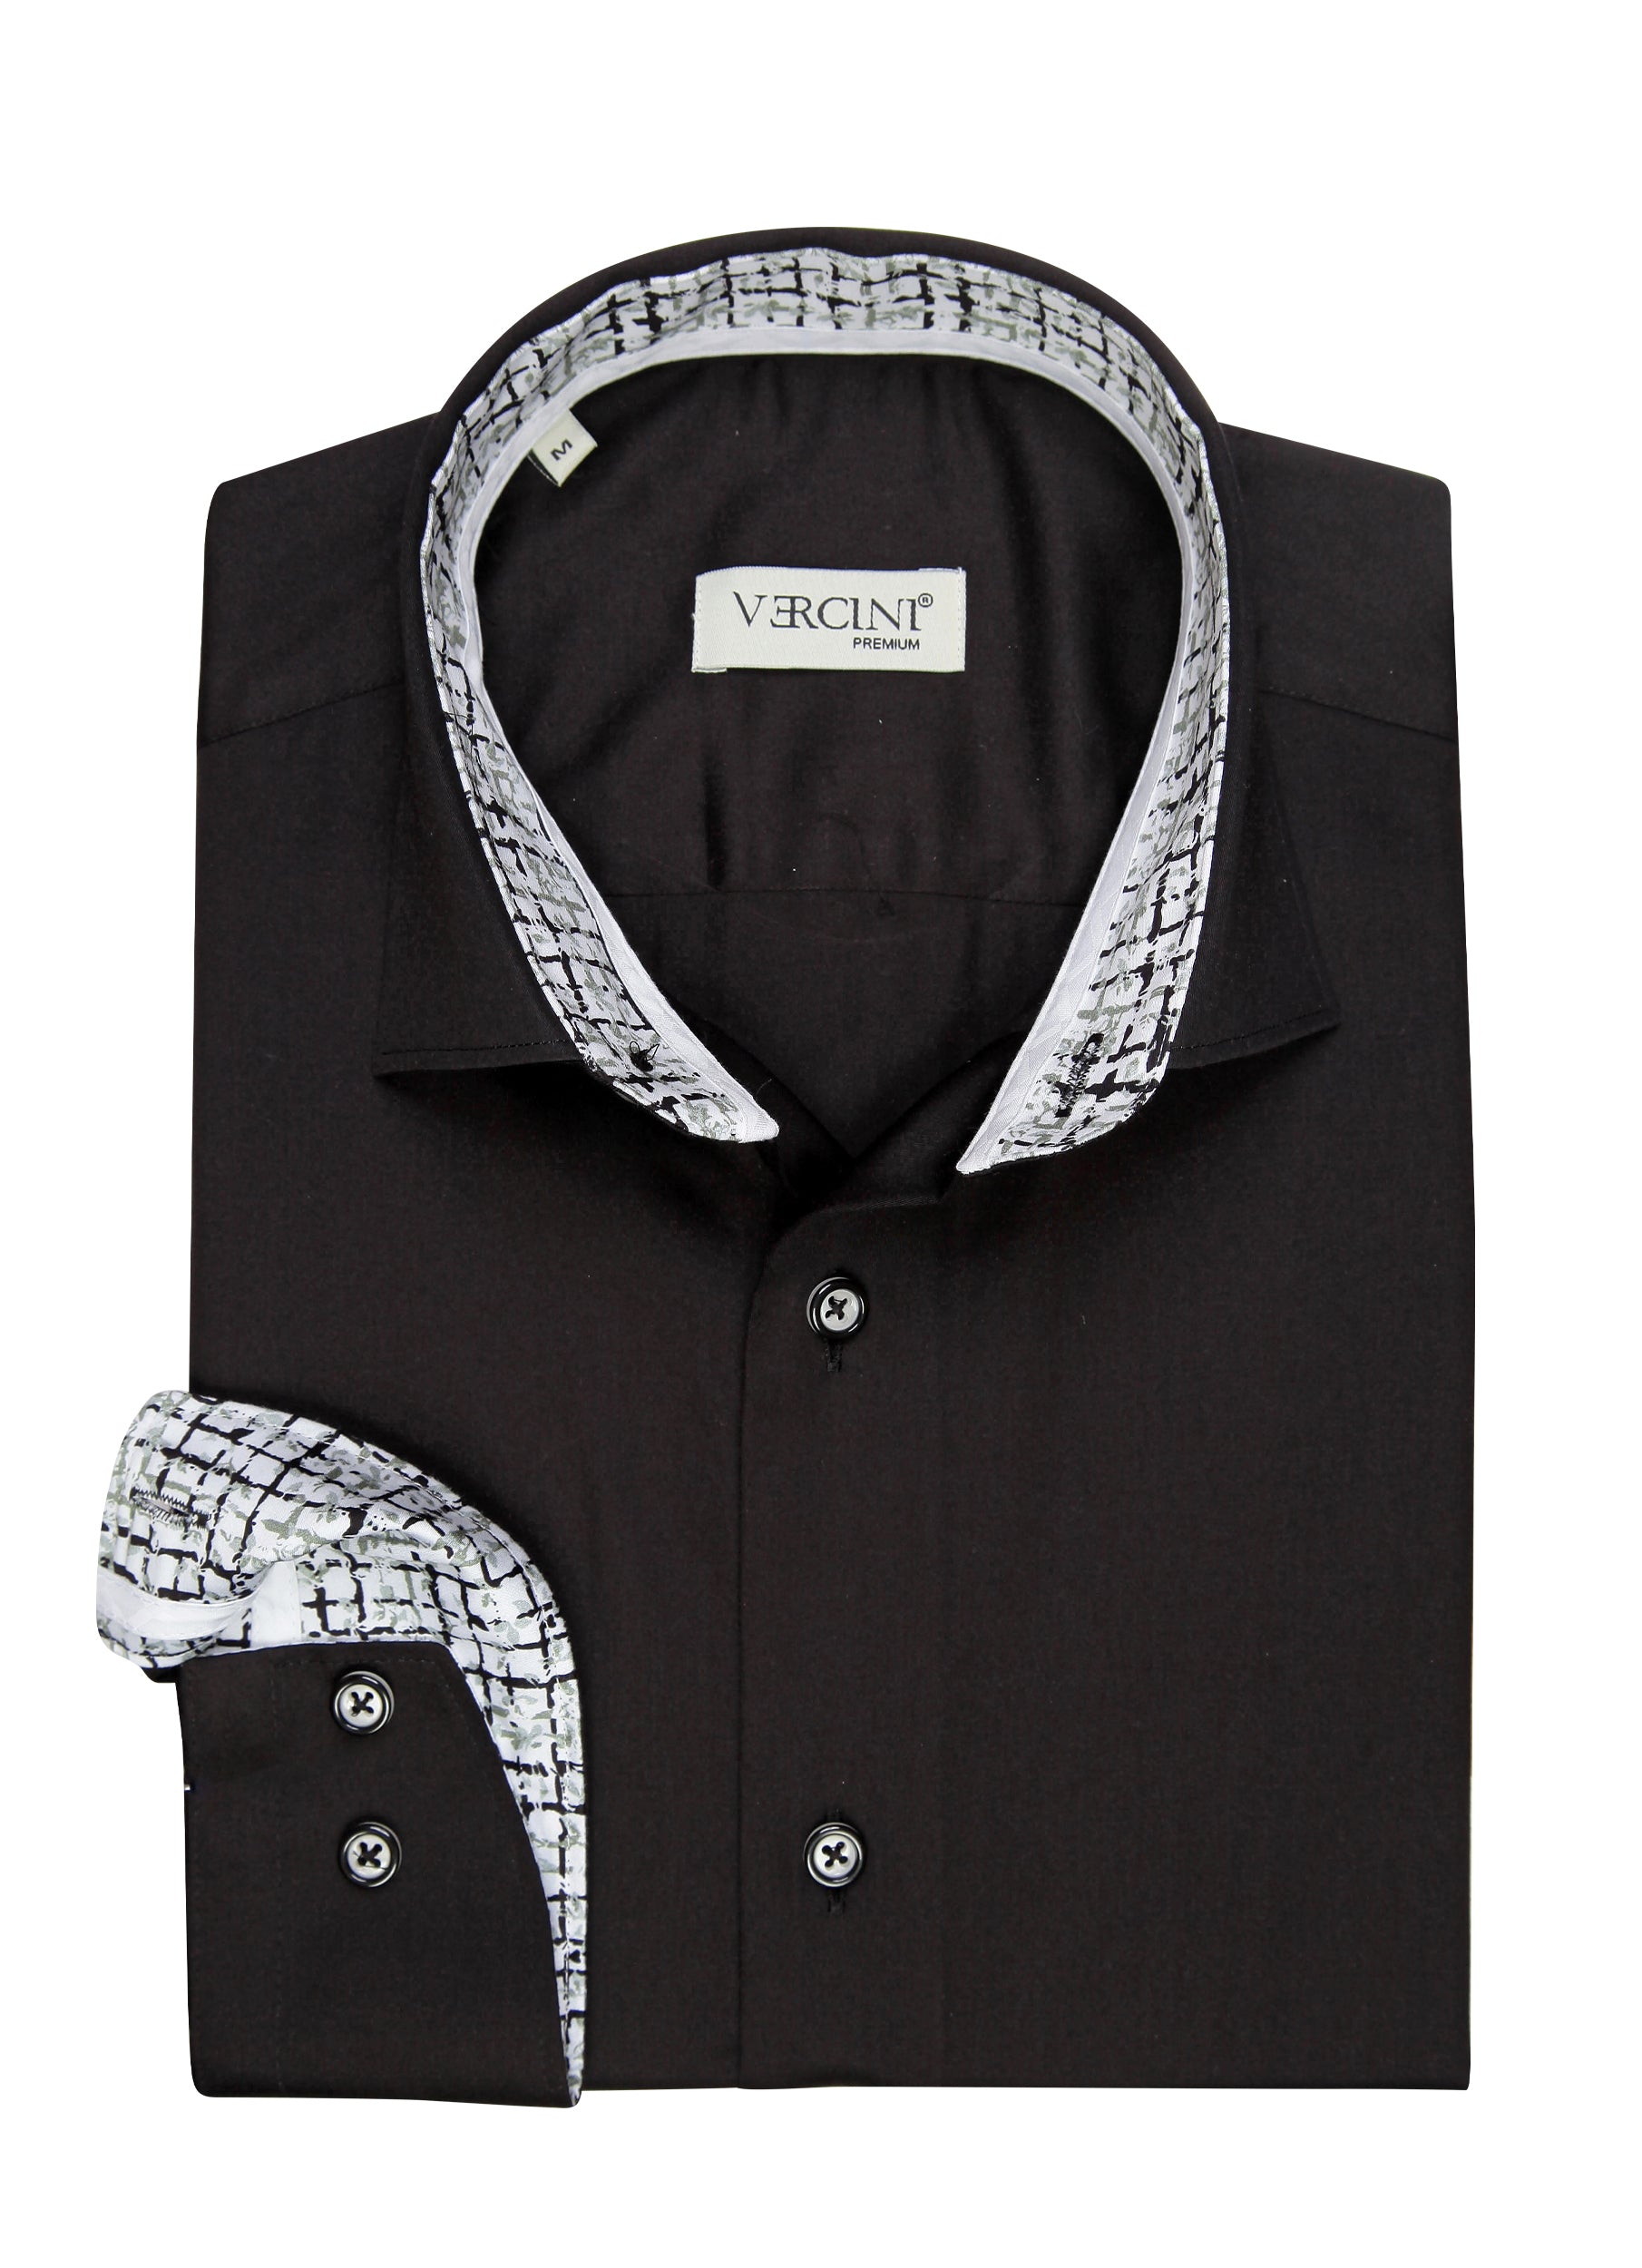 black vercini shirt 750 VERCINI COLLAR SHIRTS Casual Shirts Vercini